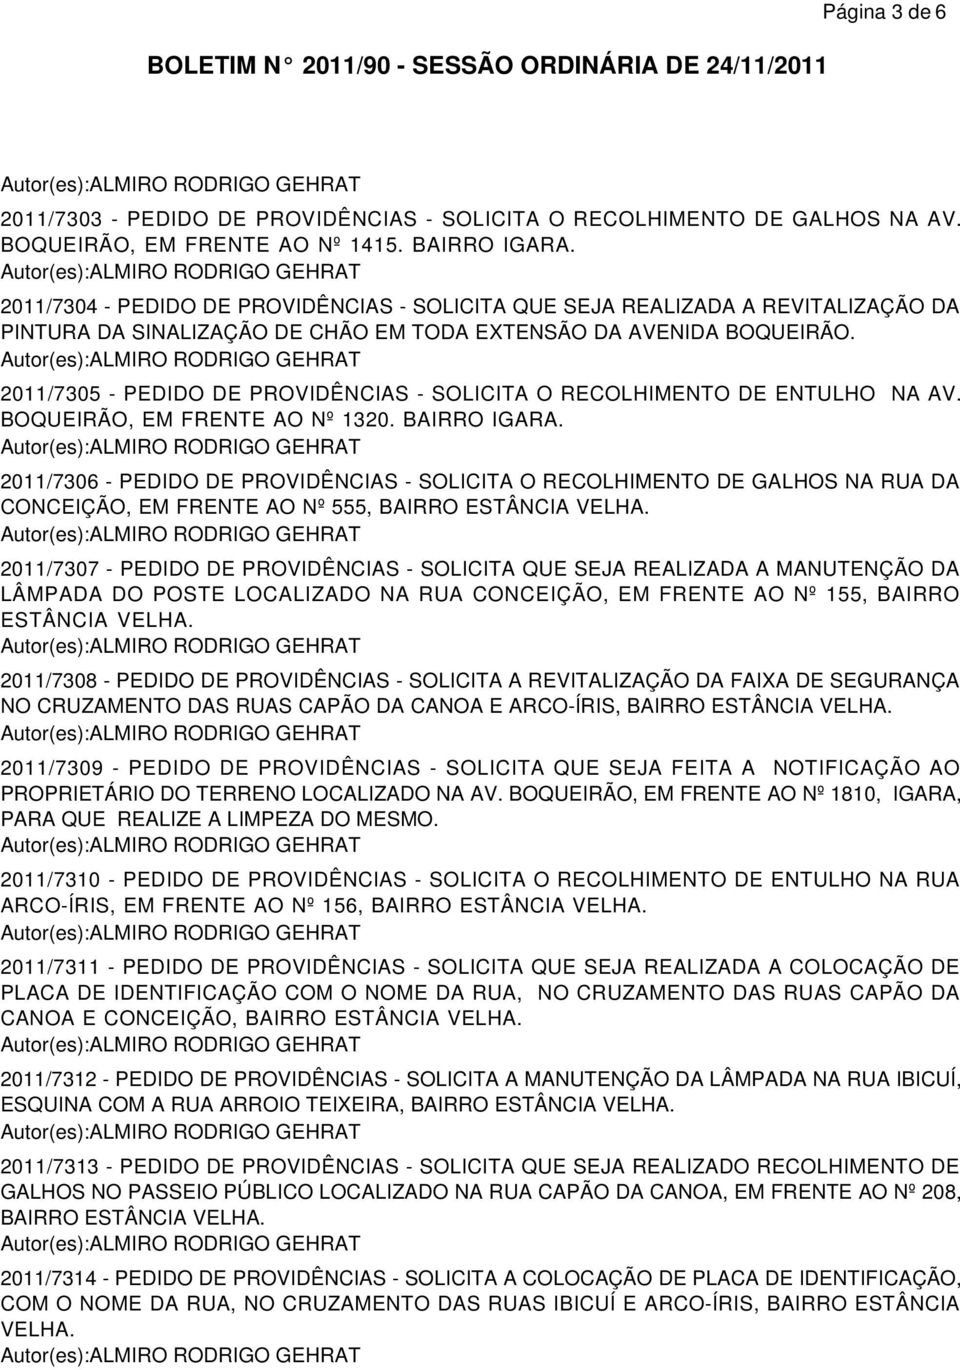 2011/7305 - PEDIDO DE PROVIDÊNCIAS - SOLICITA O RECOLHIMENTO DE ENTULHO NA AV. BOQUEIRÃO, EM FRENTE AO Nº 1320. BAIRRO IGARA.